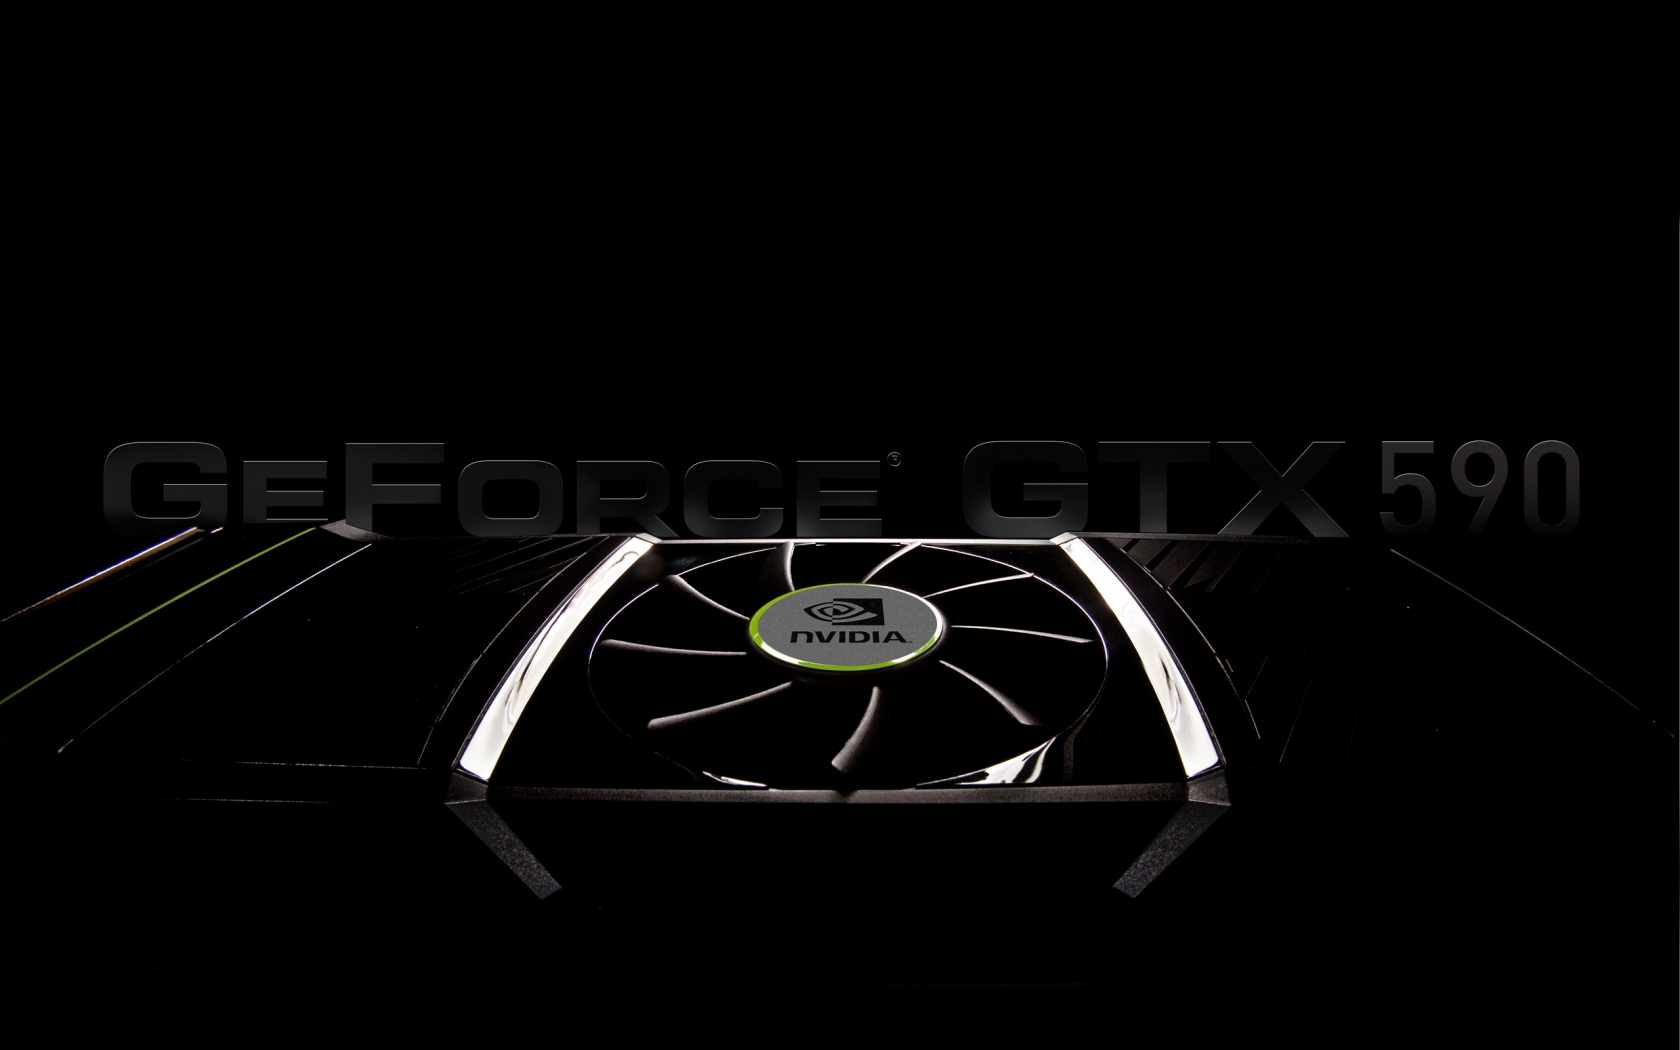 GeForce GTX 590 for 1680 x 1050 widescreen resolution